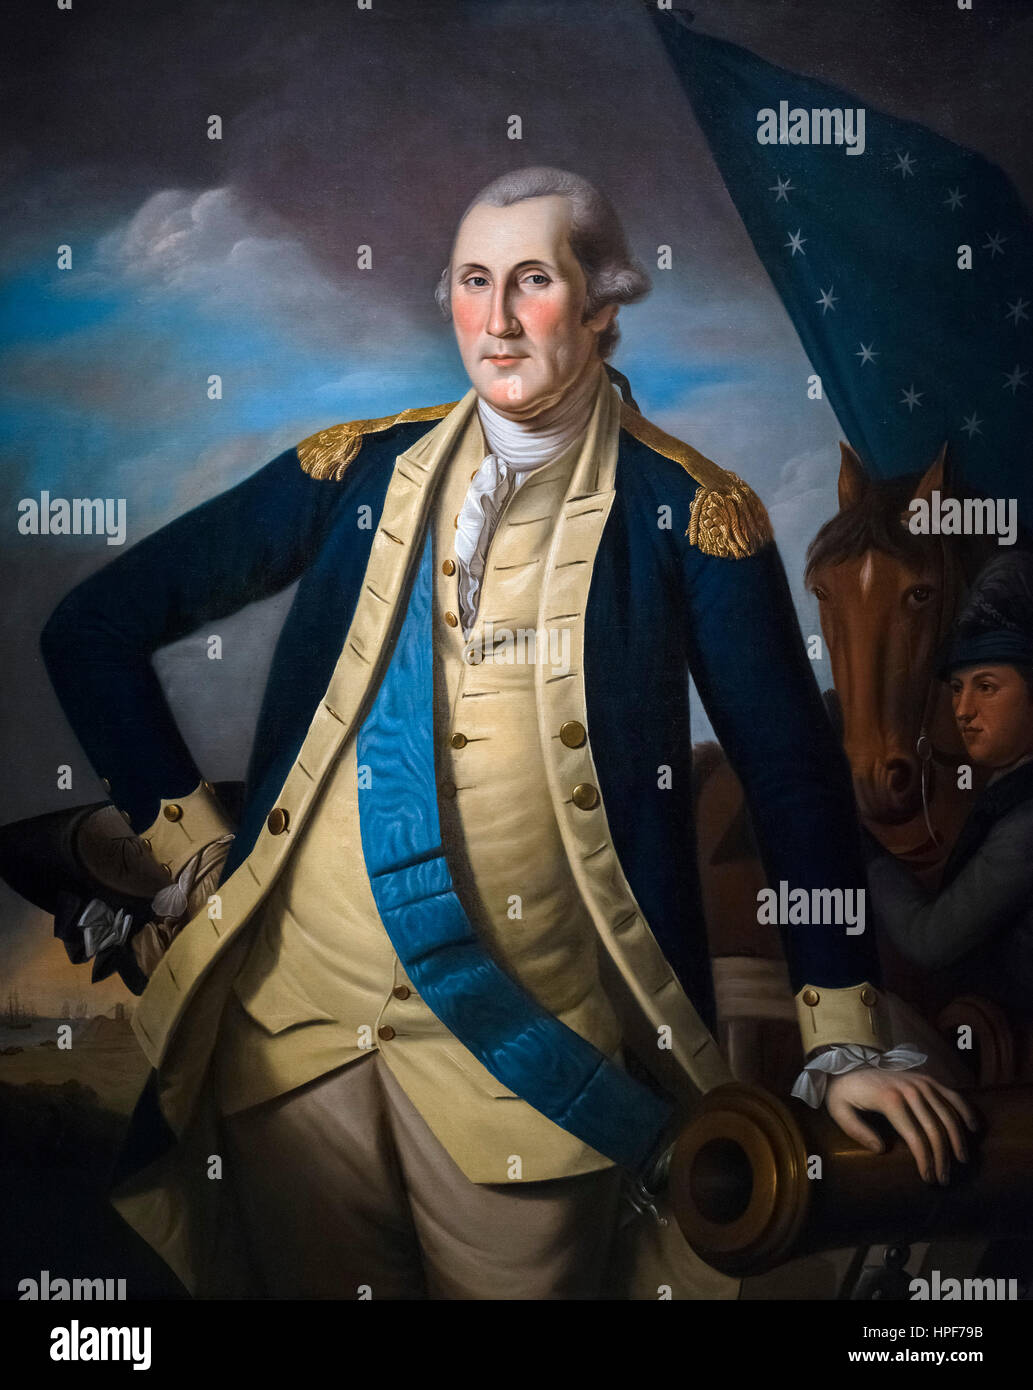 Portrait von General George Washington von Charles Willson Peale, Öl auf Leinwand, c.1781-82. Washington wird bei der Schlacht von Yorktown 1781 angezeigt. Stockfoto